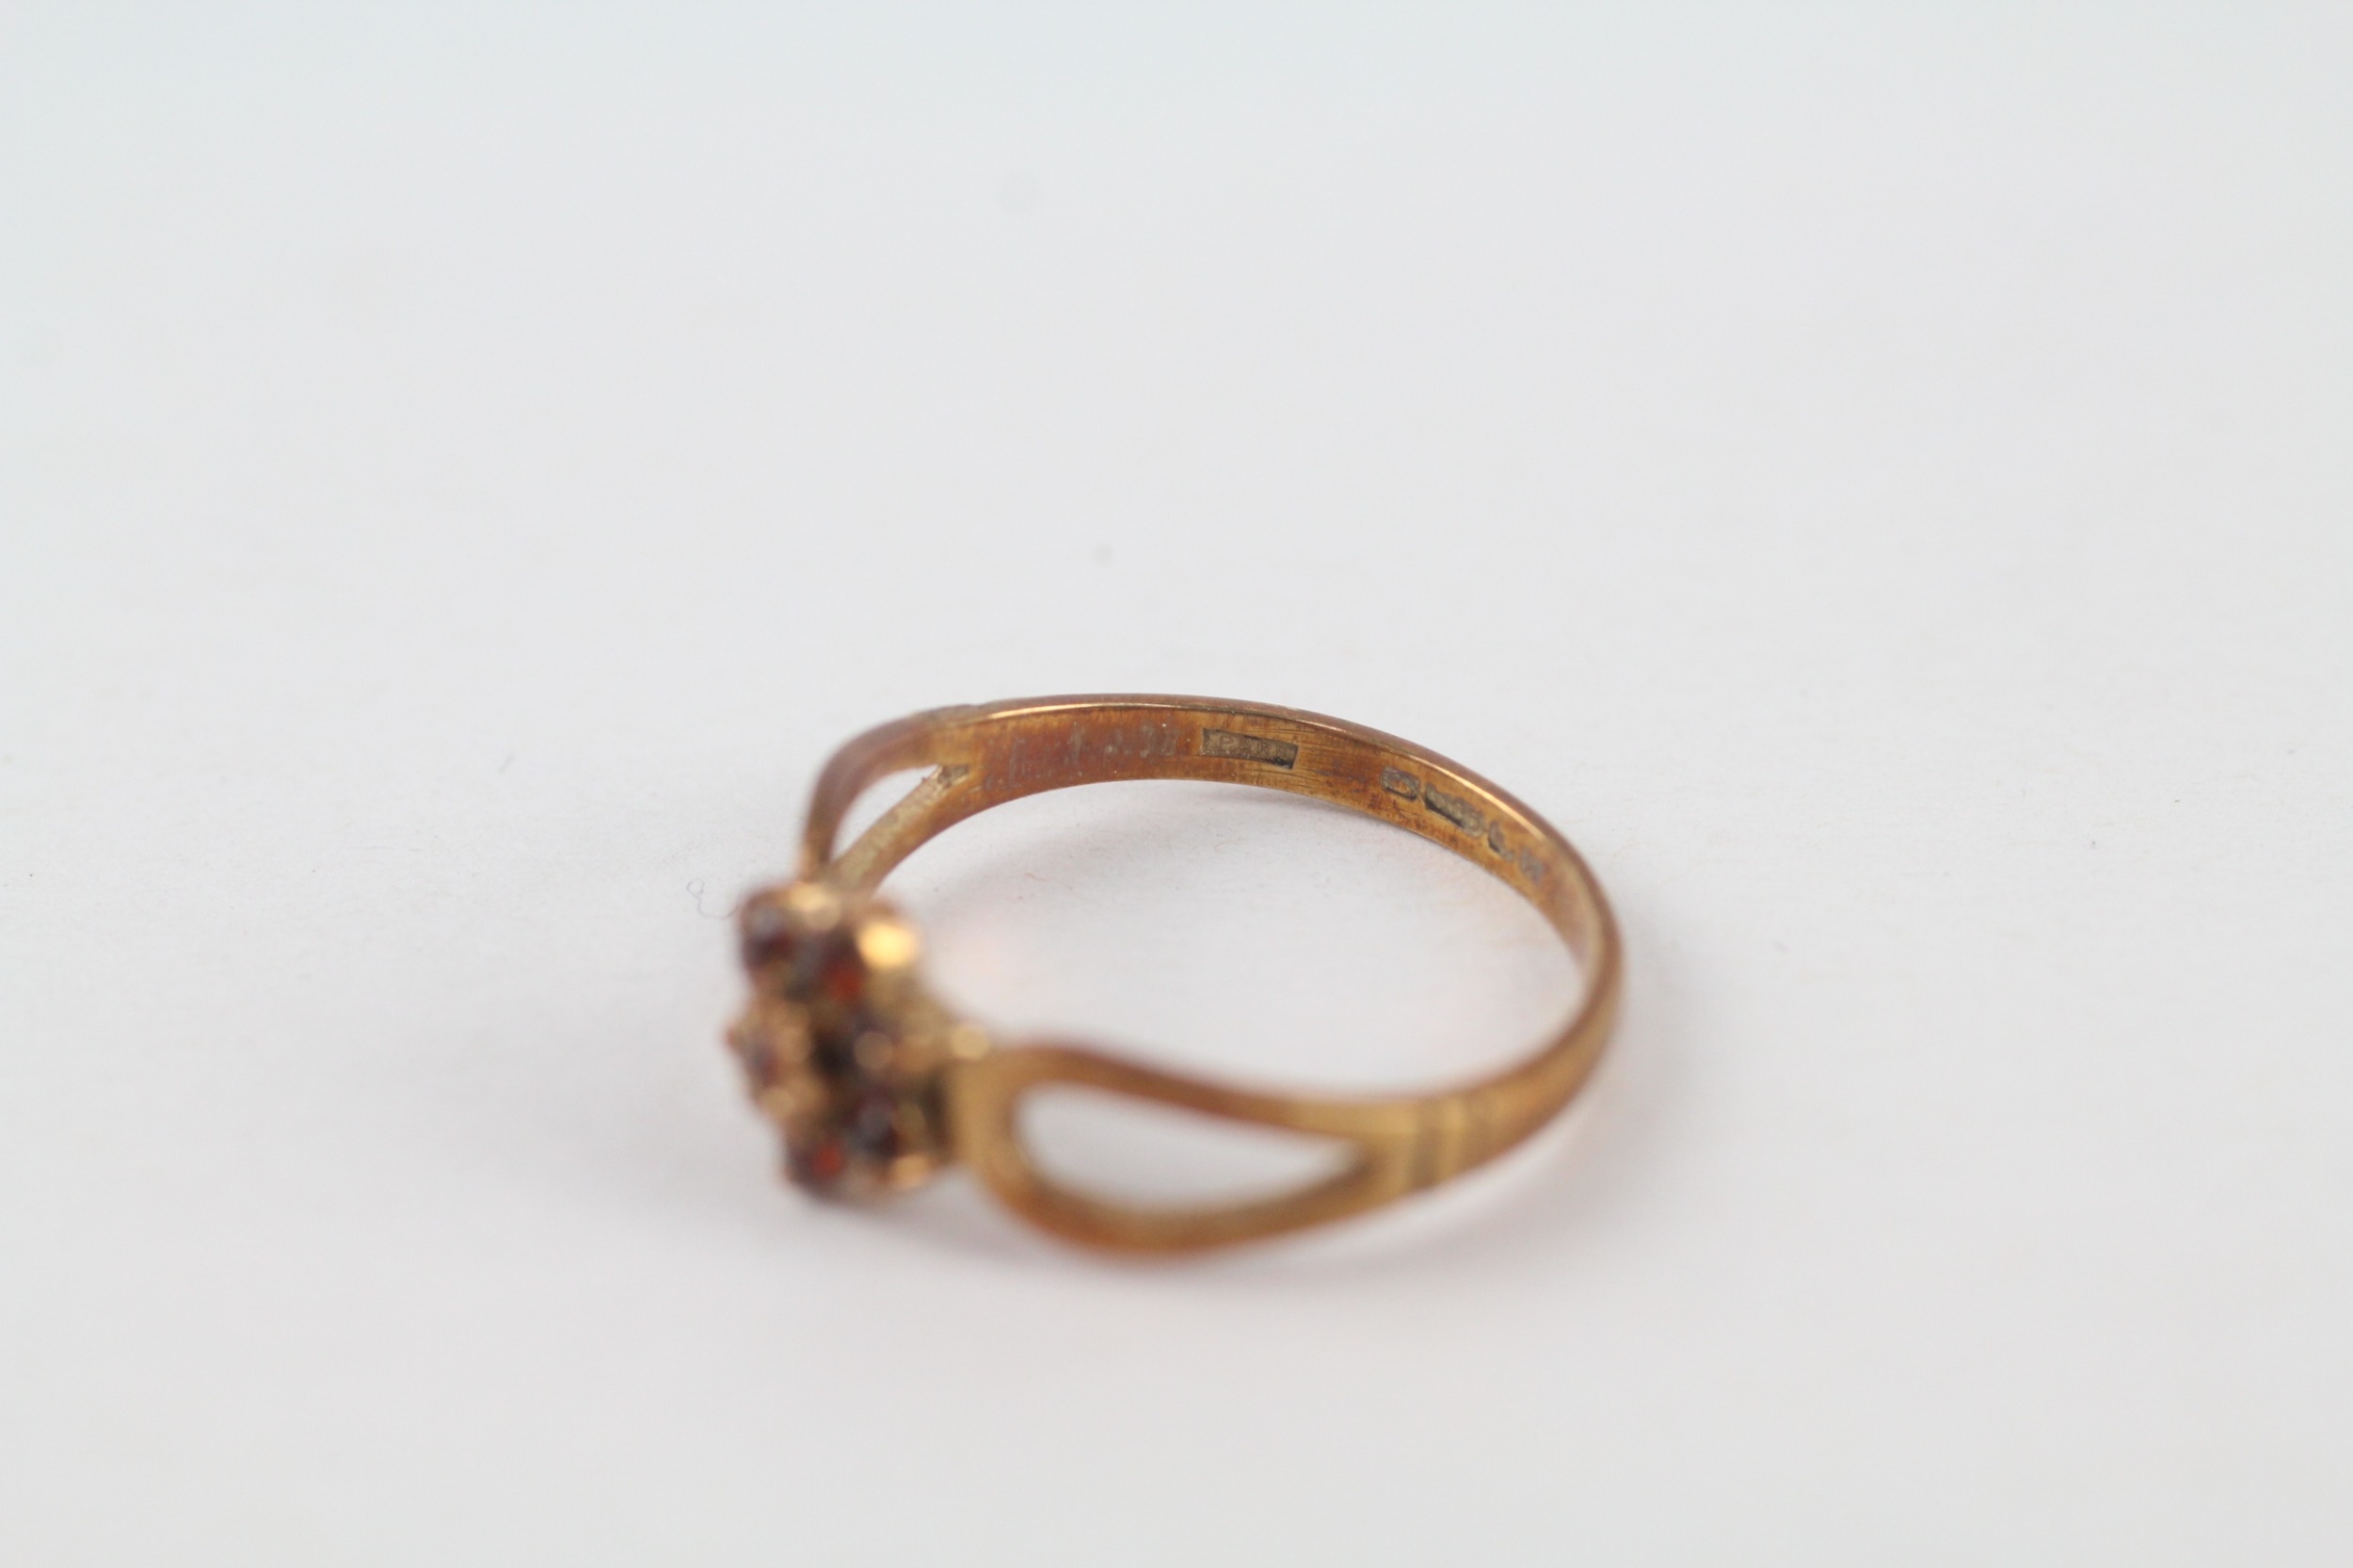 14ct gold vintage garnet cluster ring (1.6g) - Image 4 of 4